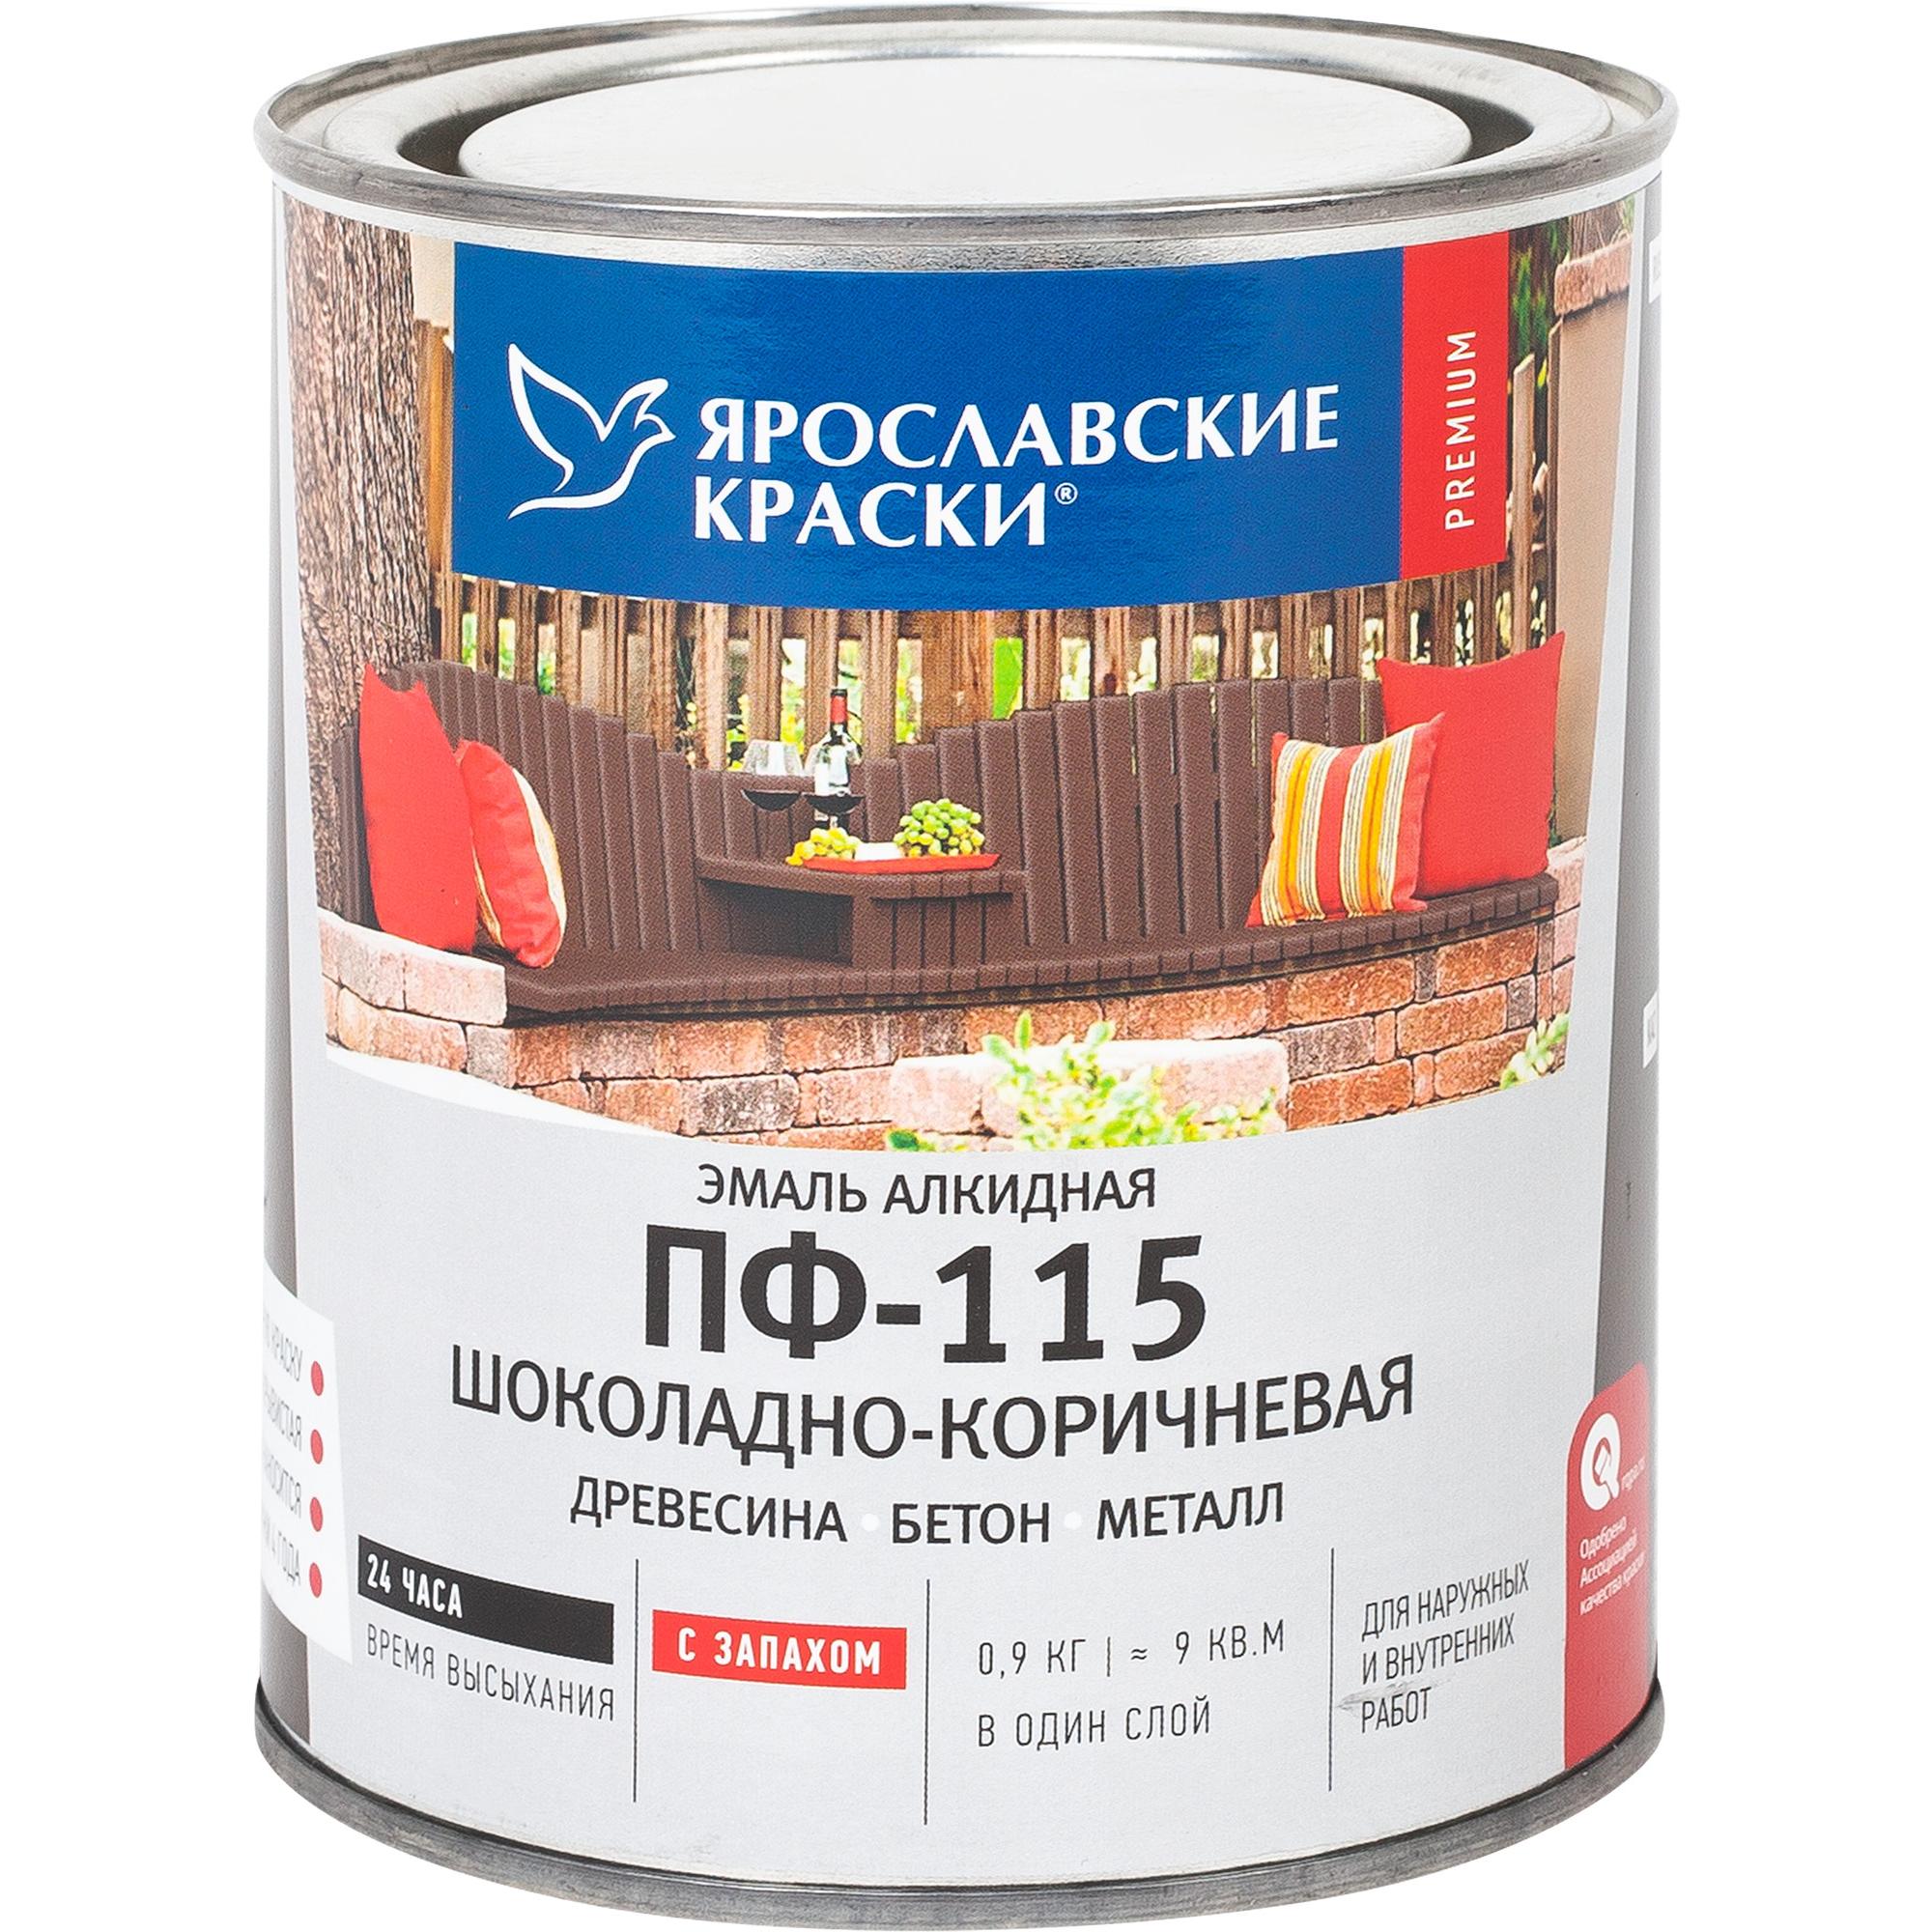  Ярославские краски ПФ-115 глянцевая цвет шоколадно-коричневый 0.9 .